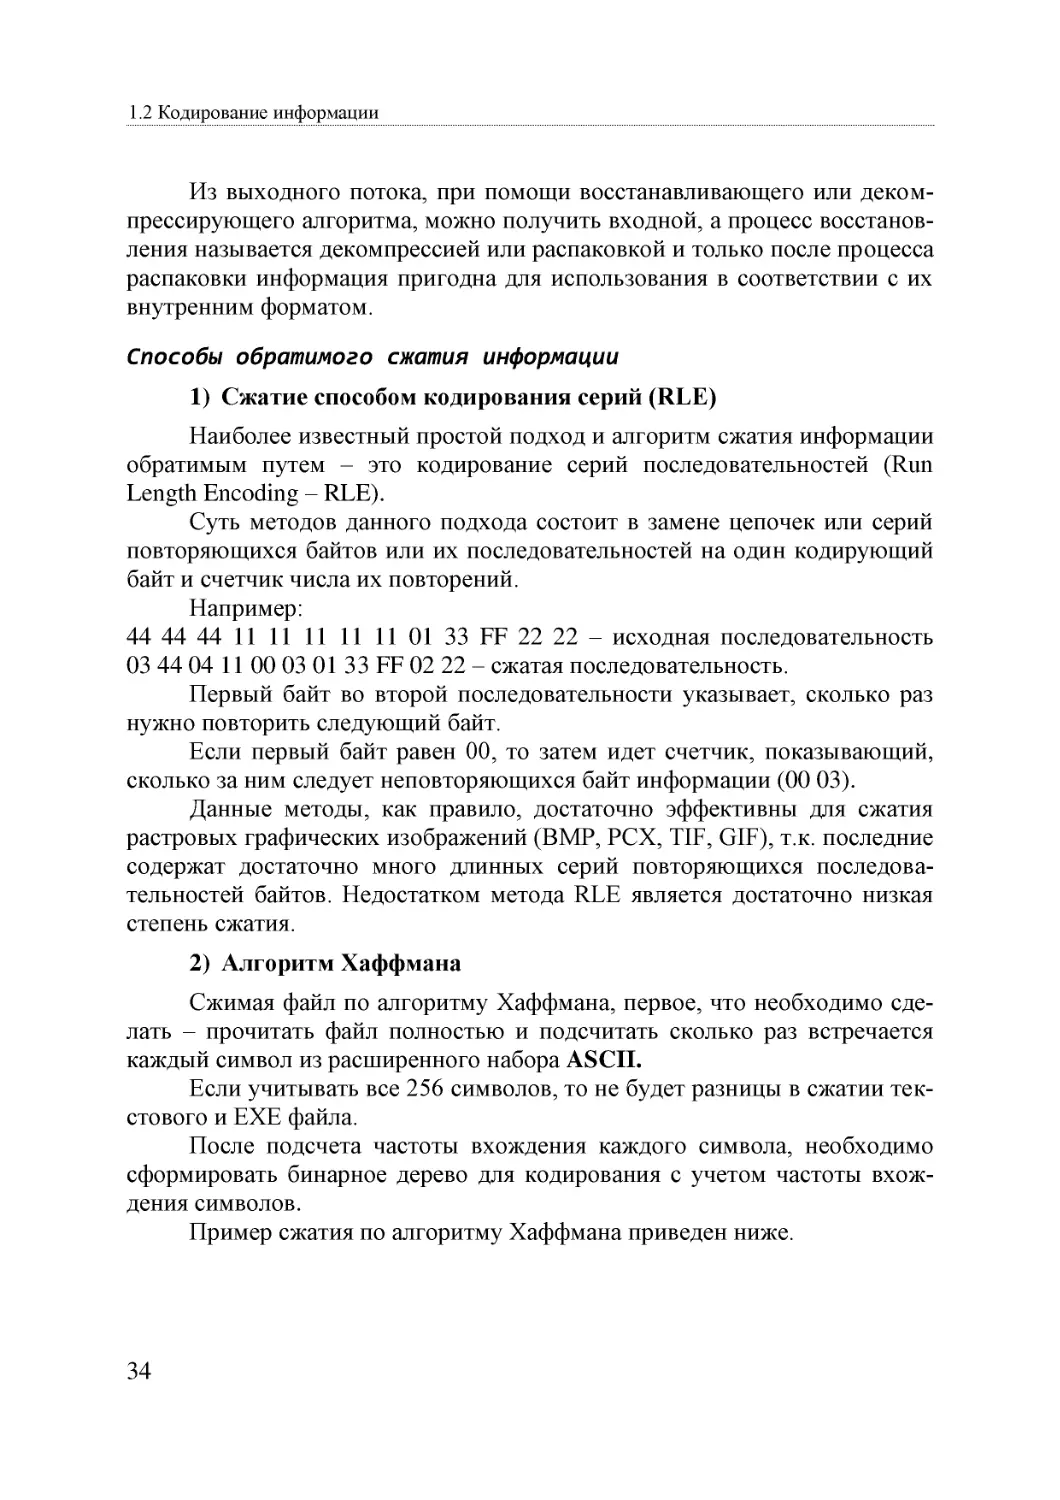 Informatika_Uchebnik_dlya_vuzov_2010 34